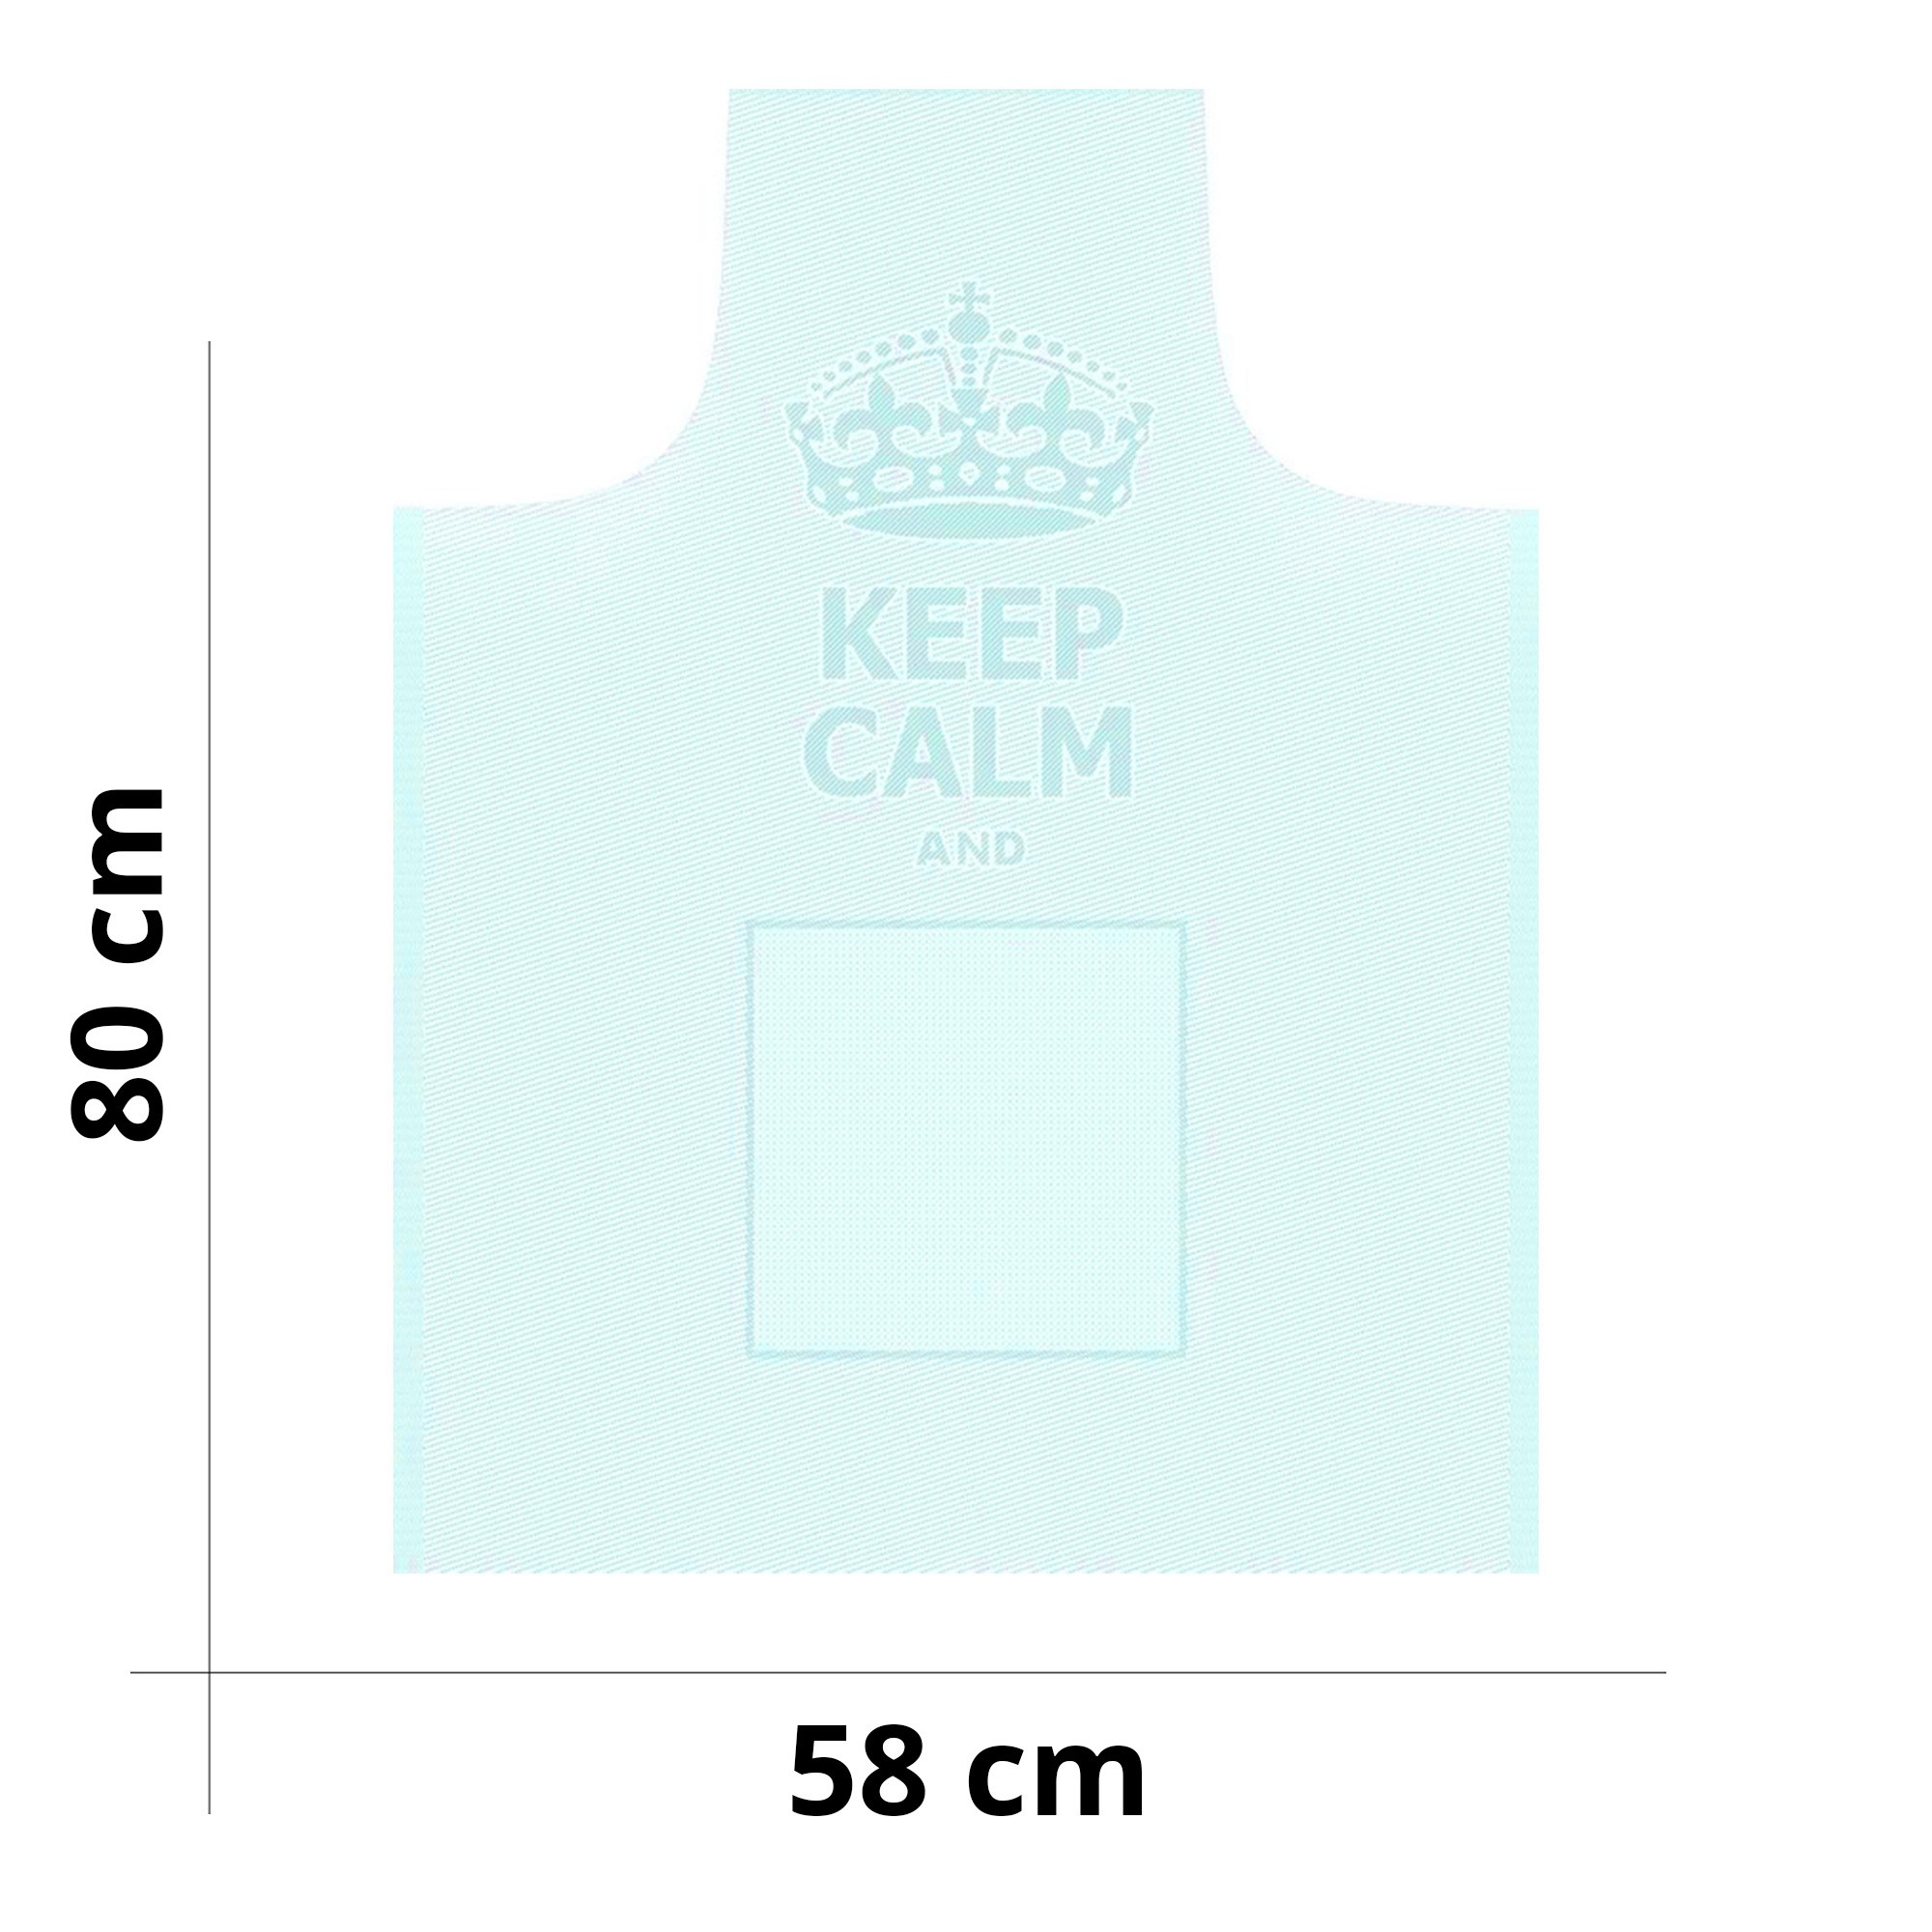 Grembiule da cucina "Keep Calm" con pettorina personalizzata - Disponibile in diversi colori - Misura 58 x 80 cm